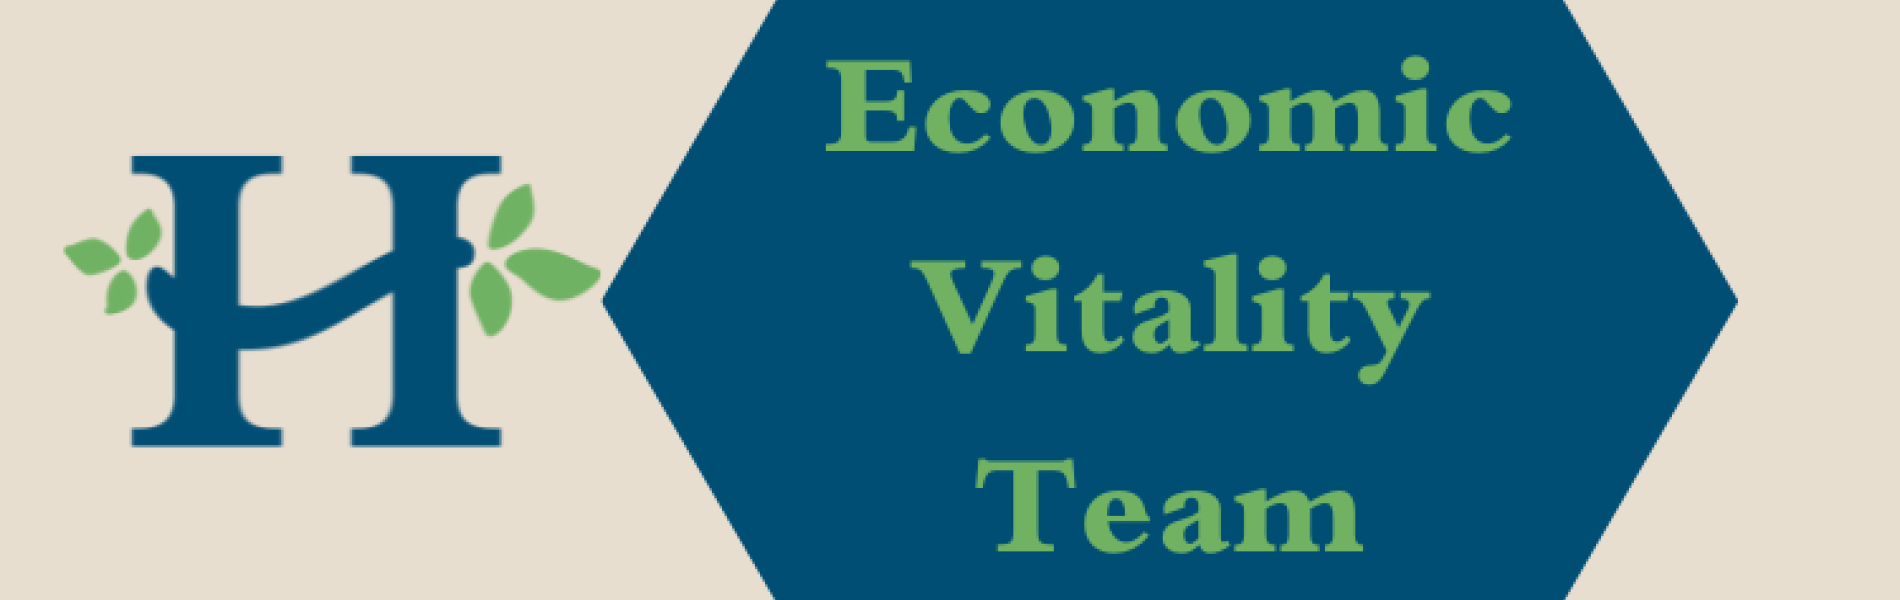 economic vitality team graphic